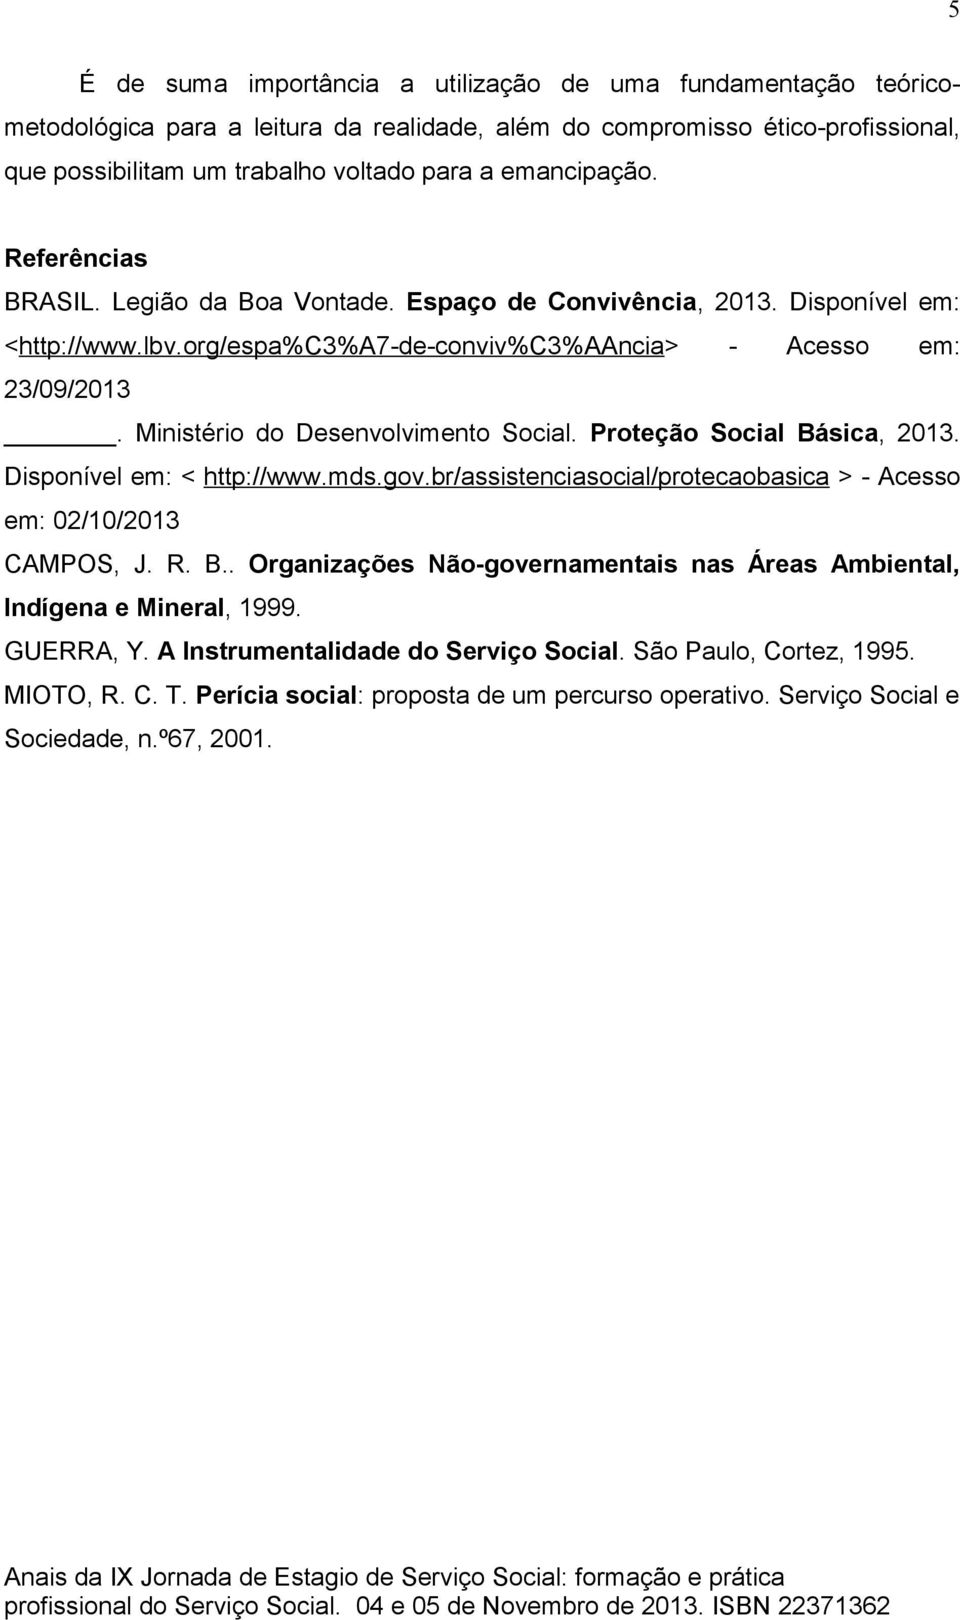 Ministério do Desenvolvimento Social. Proteção Social Básica, 2013. Disponível em: < http://www.mds.gov.br/assistenciasocial/protecaobasica > - Acesso em: 02/10/2013 CAMPOS, J. R. B.. Organizações Não-governamentais nas Áreas Ambiental, Indígena e Mineral, 1999.